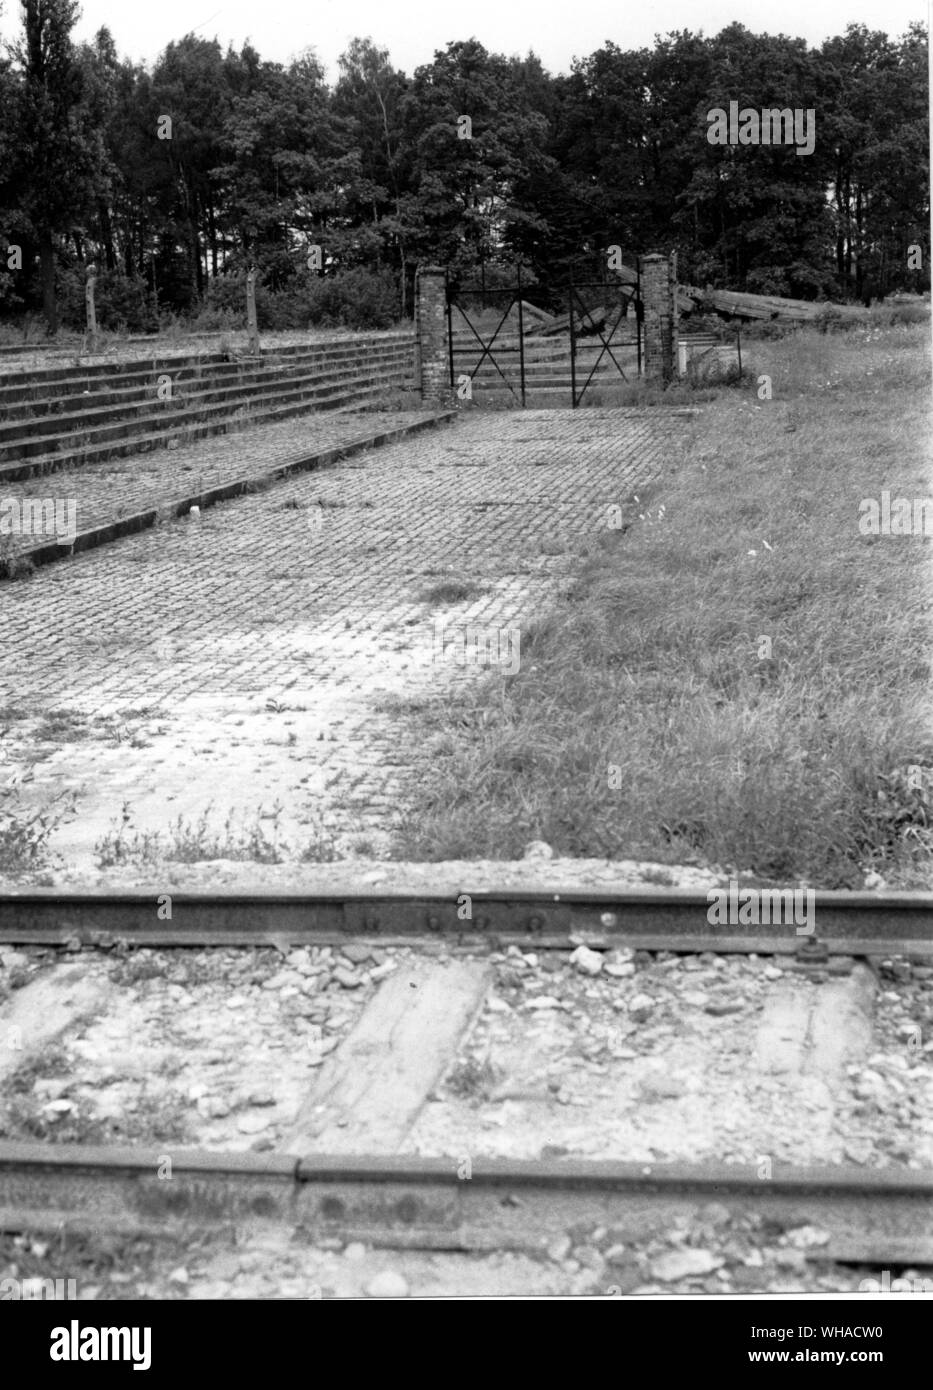 La porte et les ruines de crématorium III avec les embranchements ferroviaires au premier plan et le bois de bouleau derrière prises en 1980 Banque D'Images